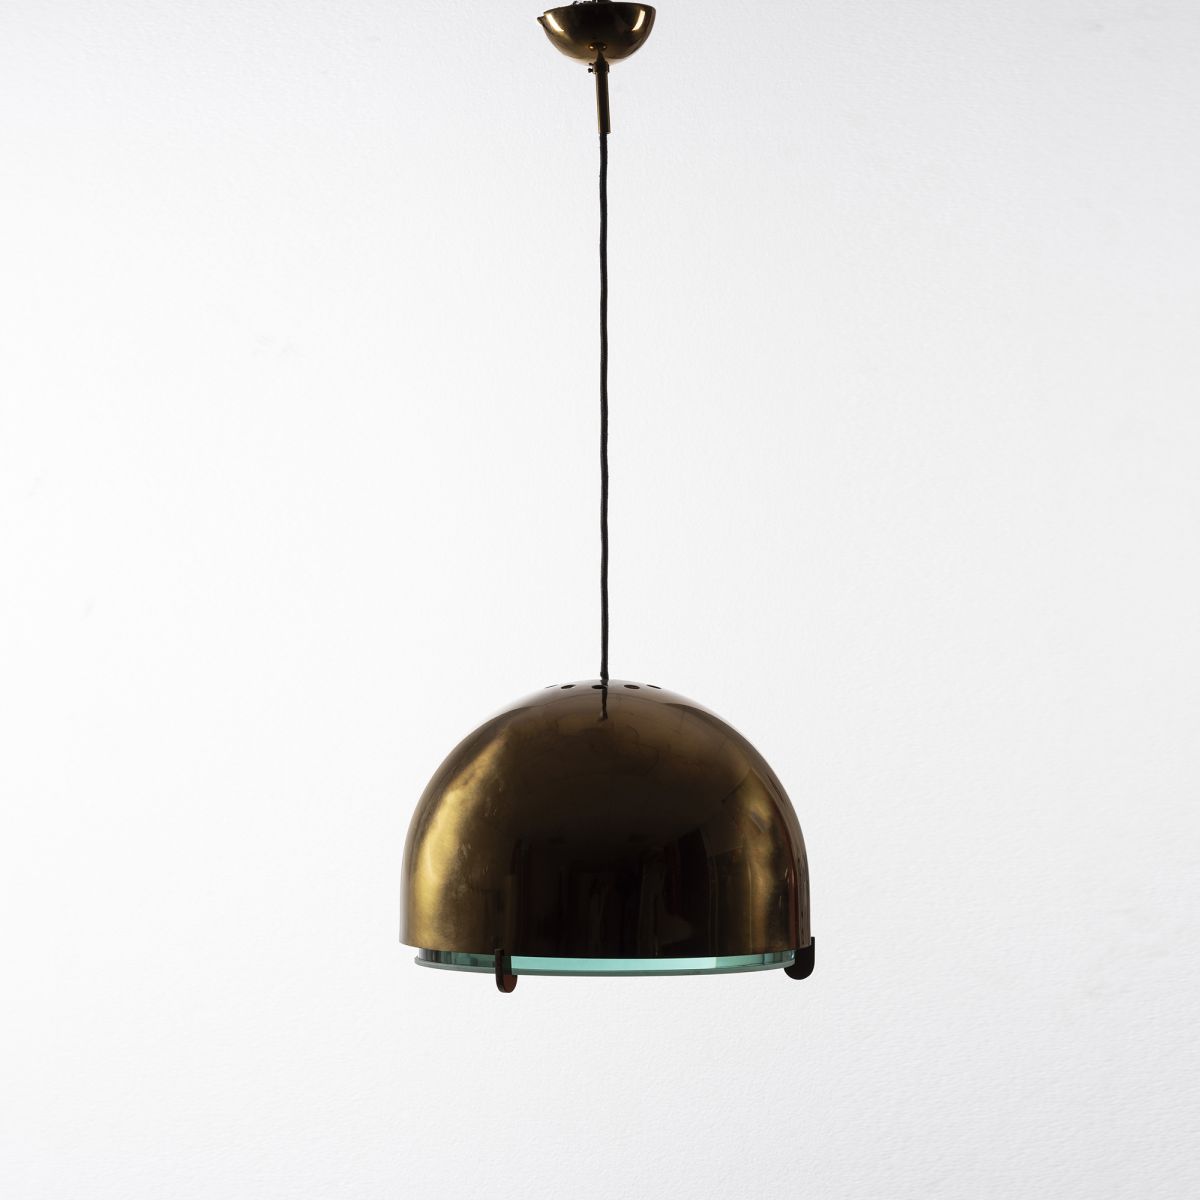 Ceiling lamp model 2409 Max Ingrand pic-1